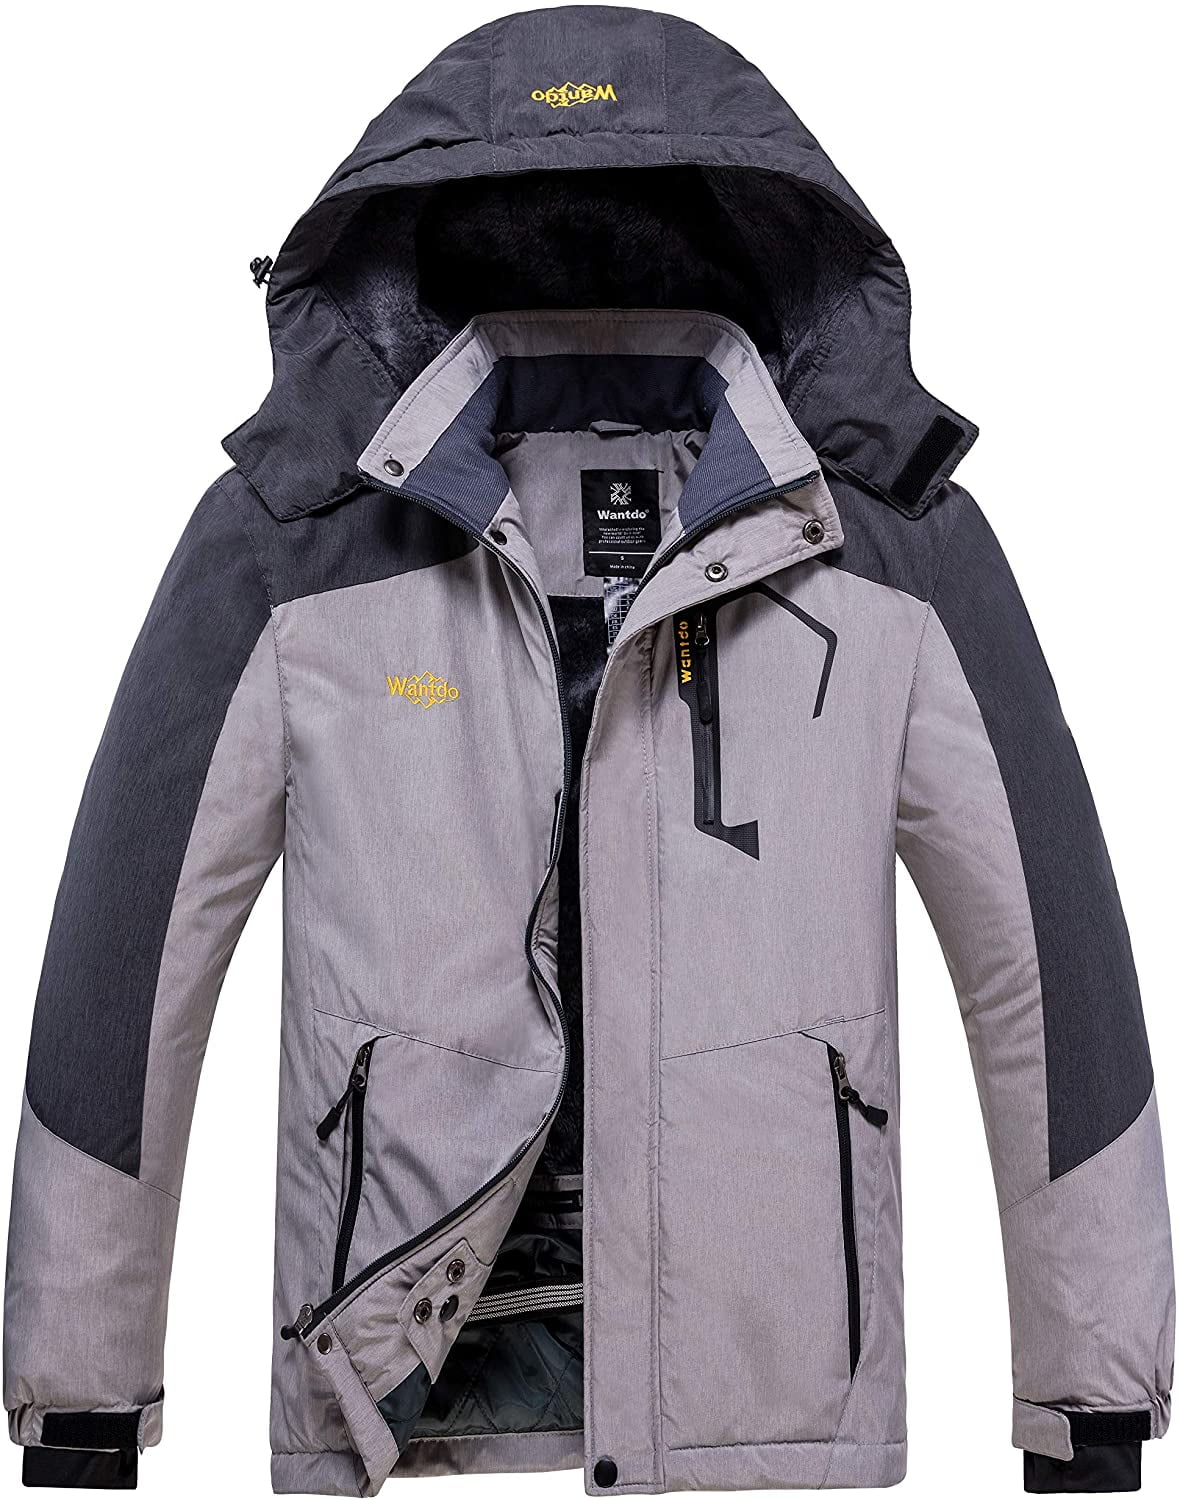 Wantdo Men's Mountain Waterproof Ski Jacket Windproof Rain Jacket Winter Warm Hooded Coat 